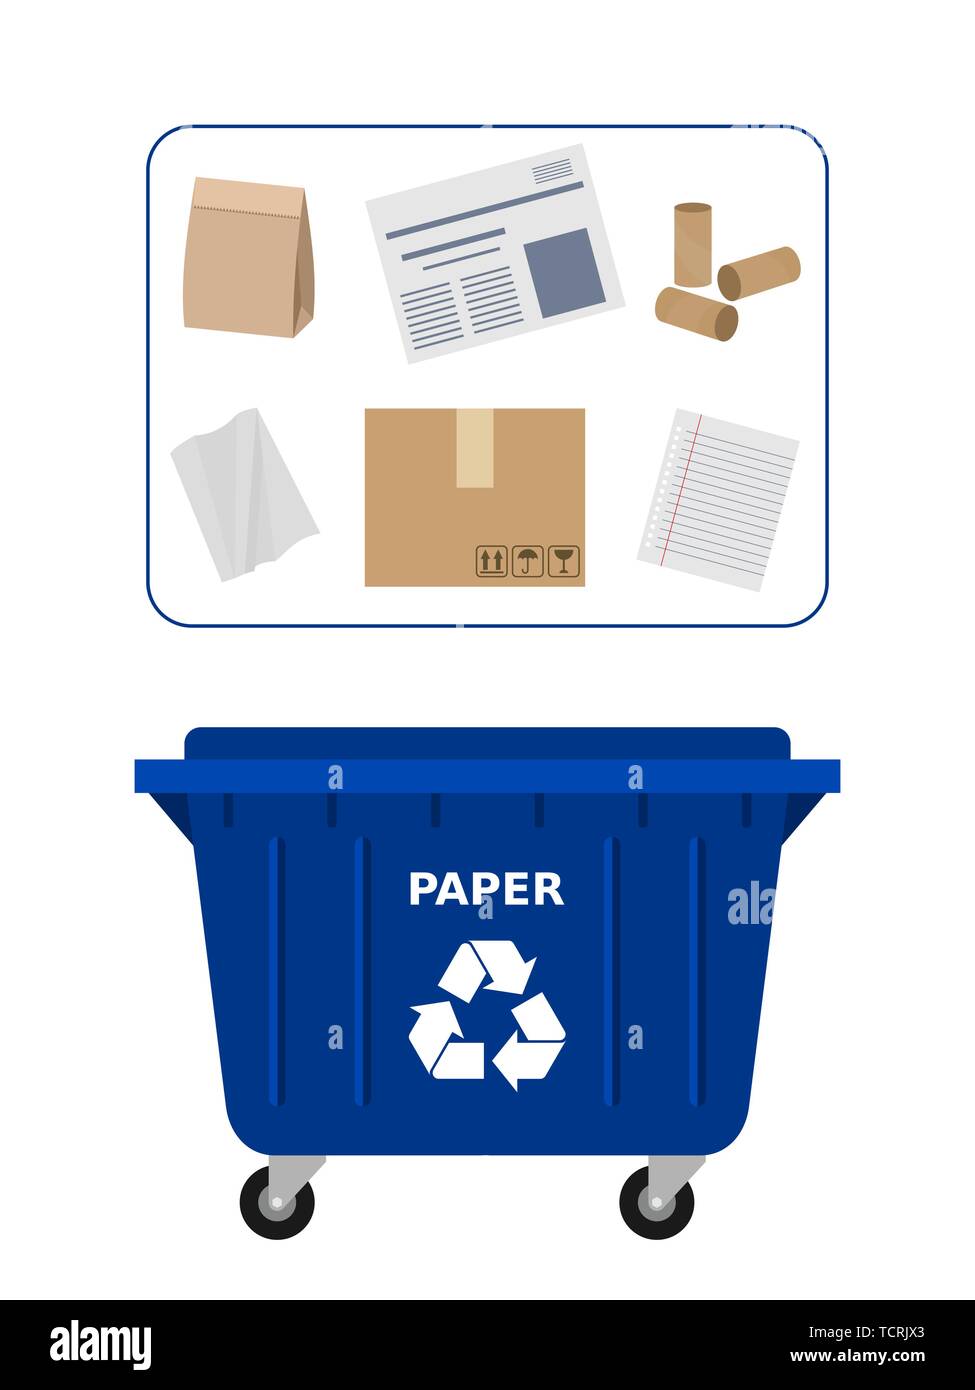 Benne à déchets pour les déchets de papier aux fins de recyclage. Recyclage  du papier au tri sélectif des déchets, tri, déchets, eco friendly, concept.  Conteneur bleu Image Vectorielle Stock - Alamy